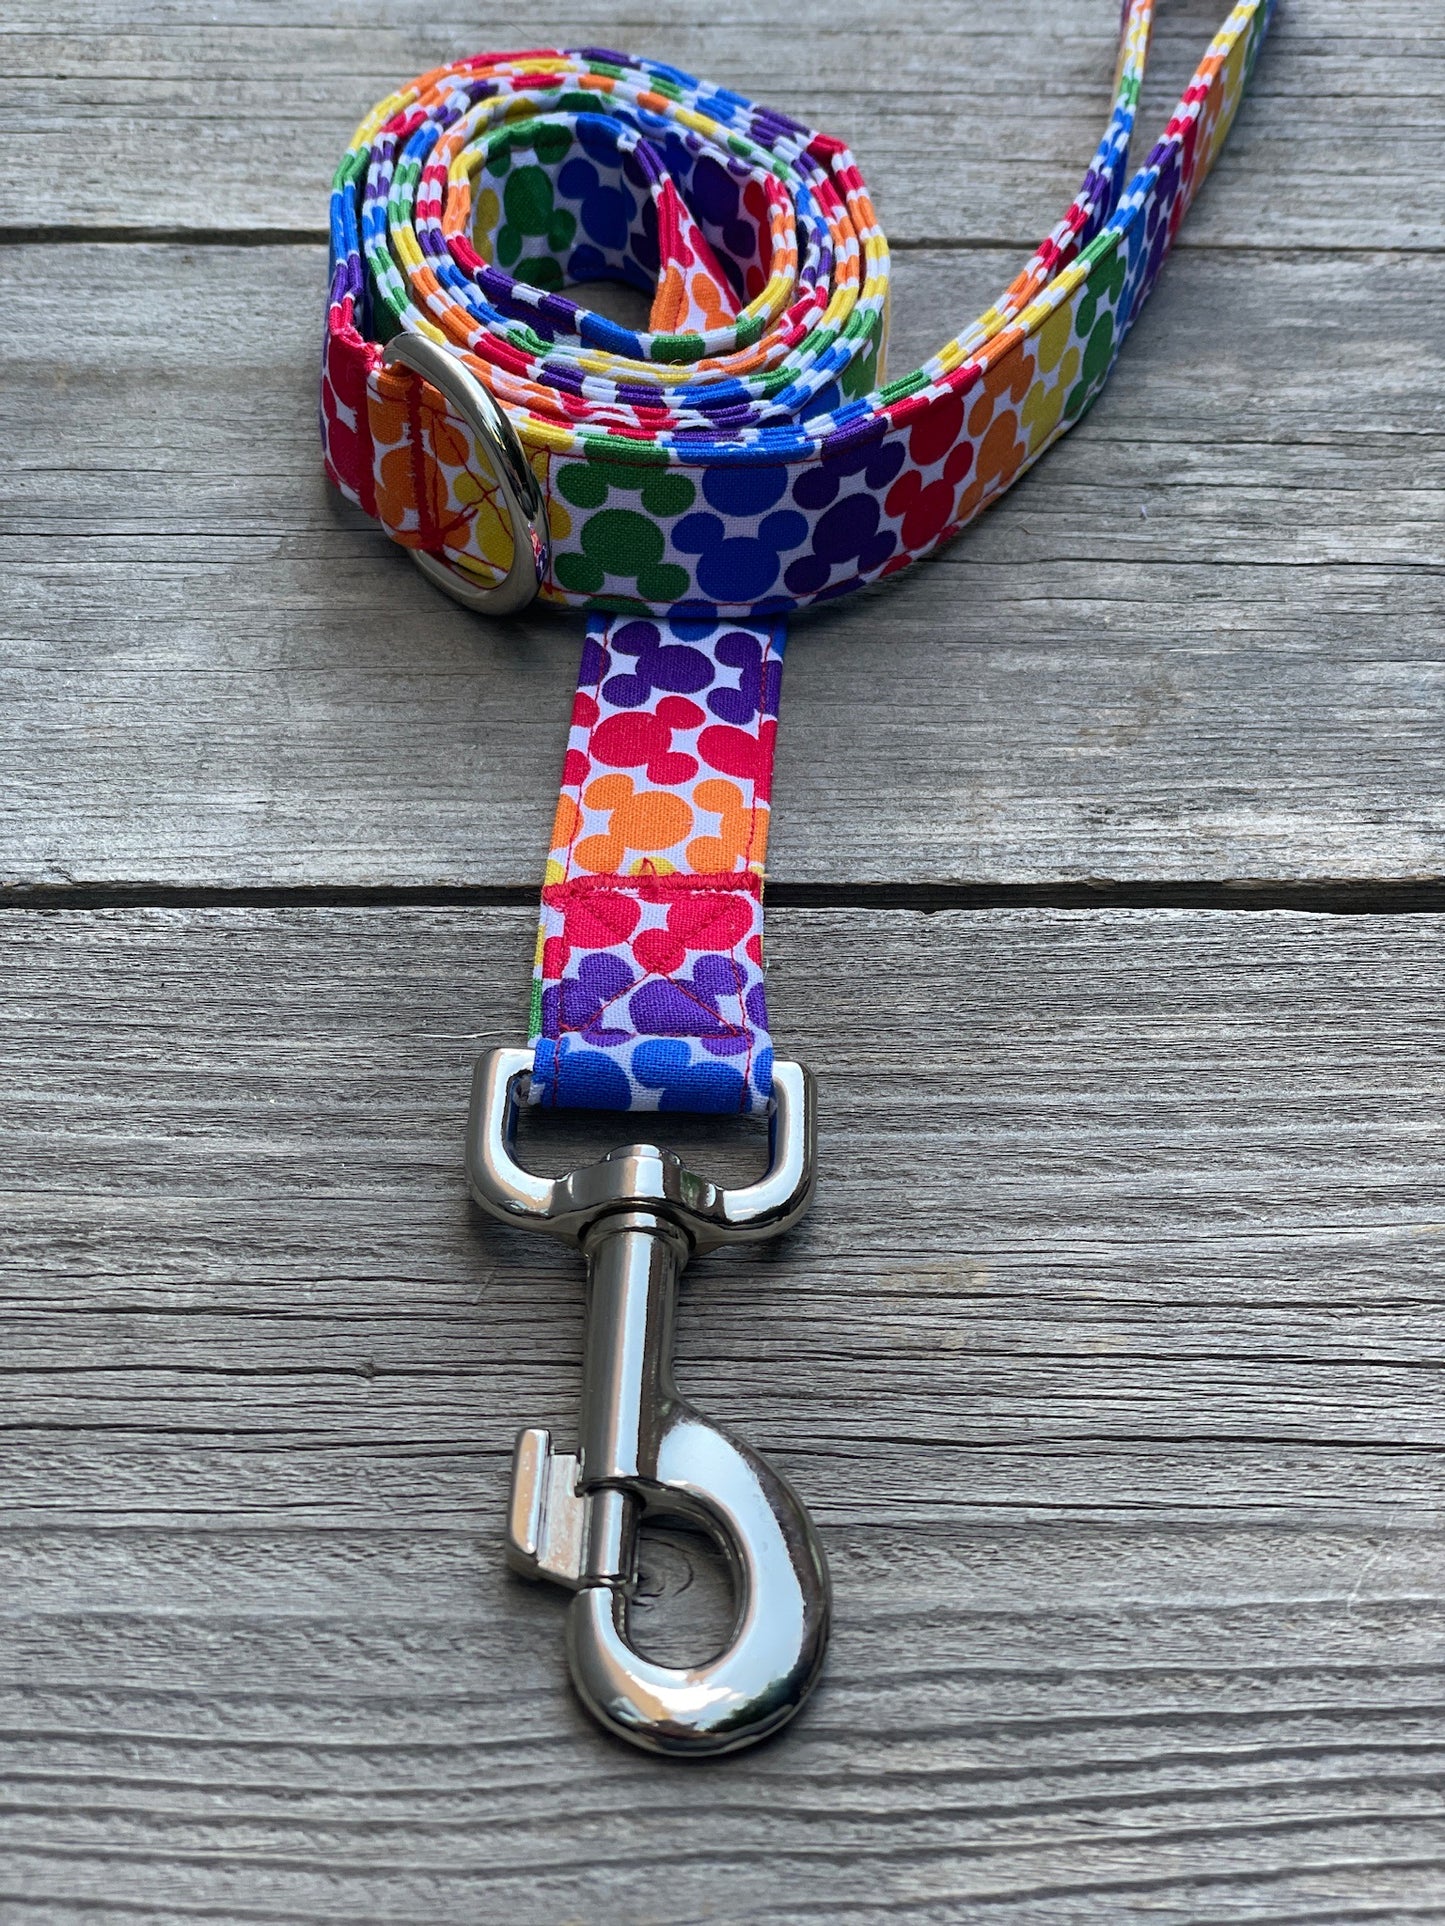 Rainbow Mickey -Dog Collar